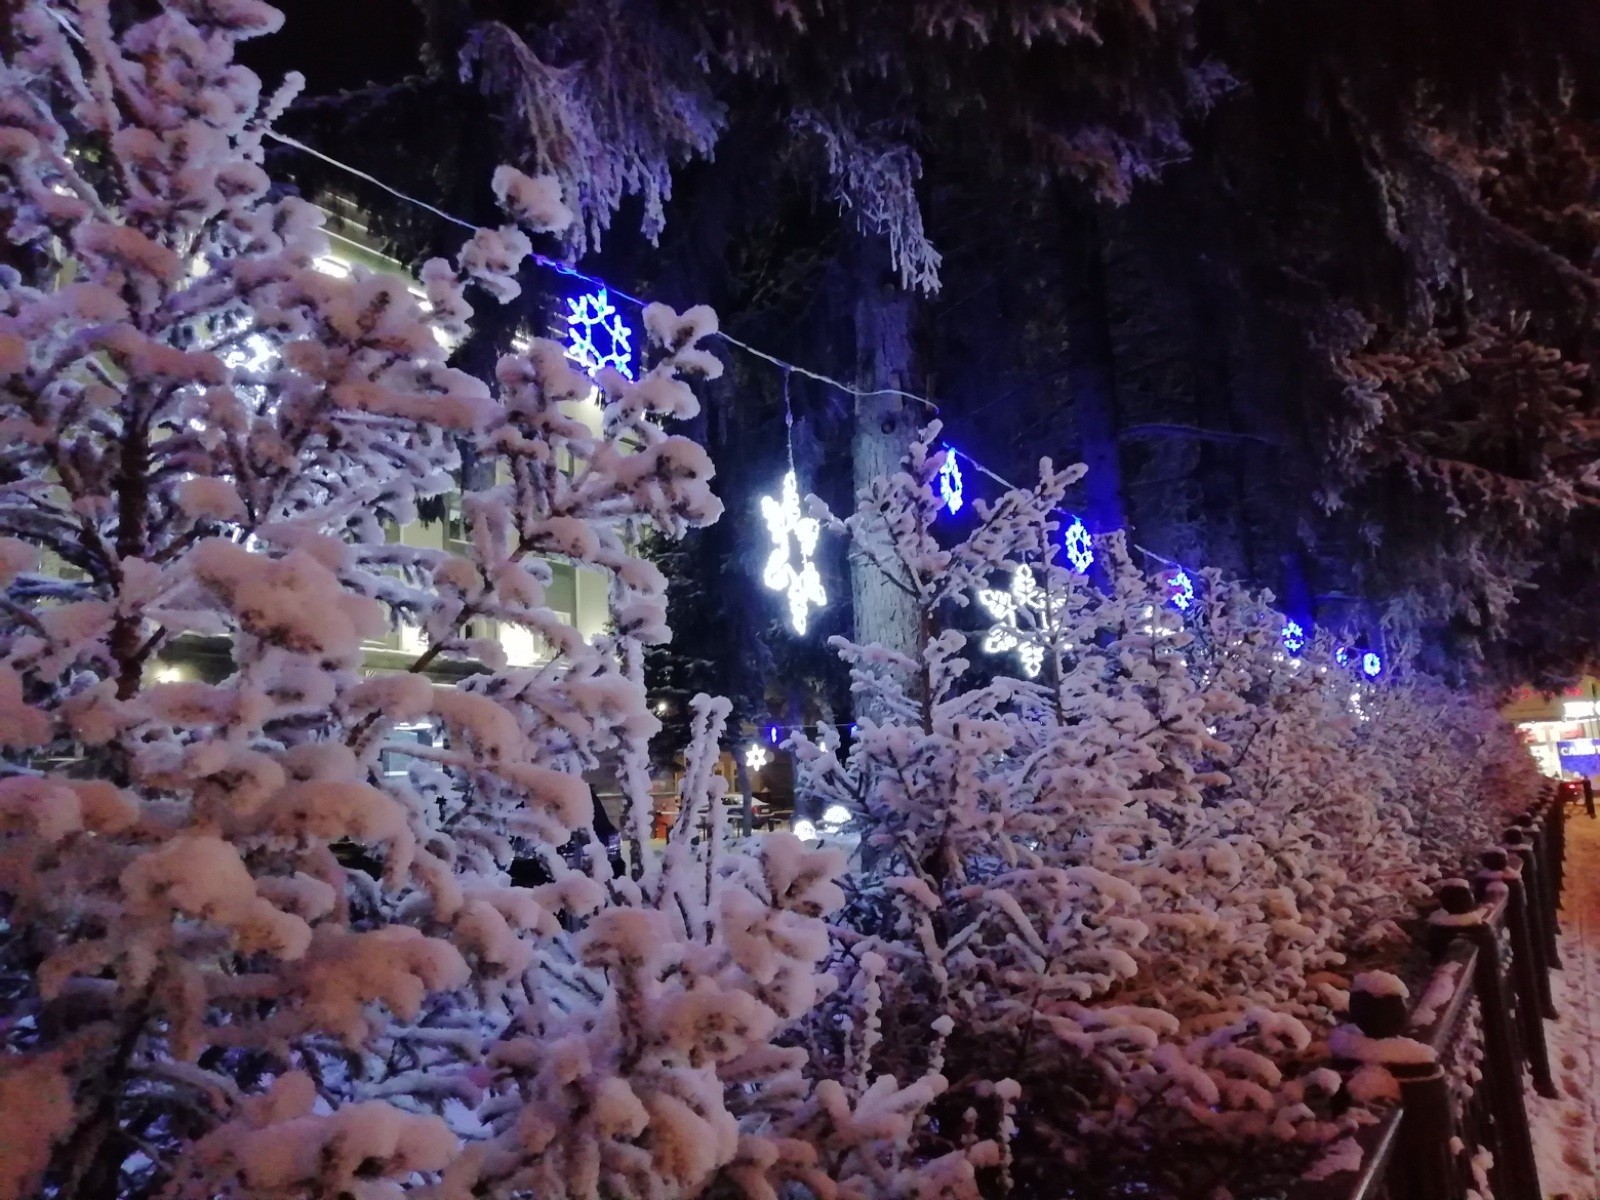 Winter fairy tale in Ufa - My, Ufa, Winter, Longpost